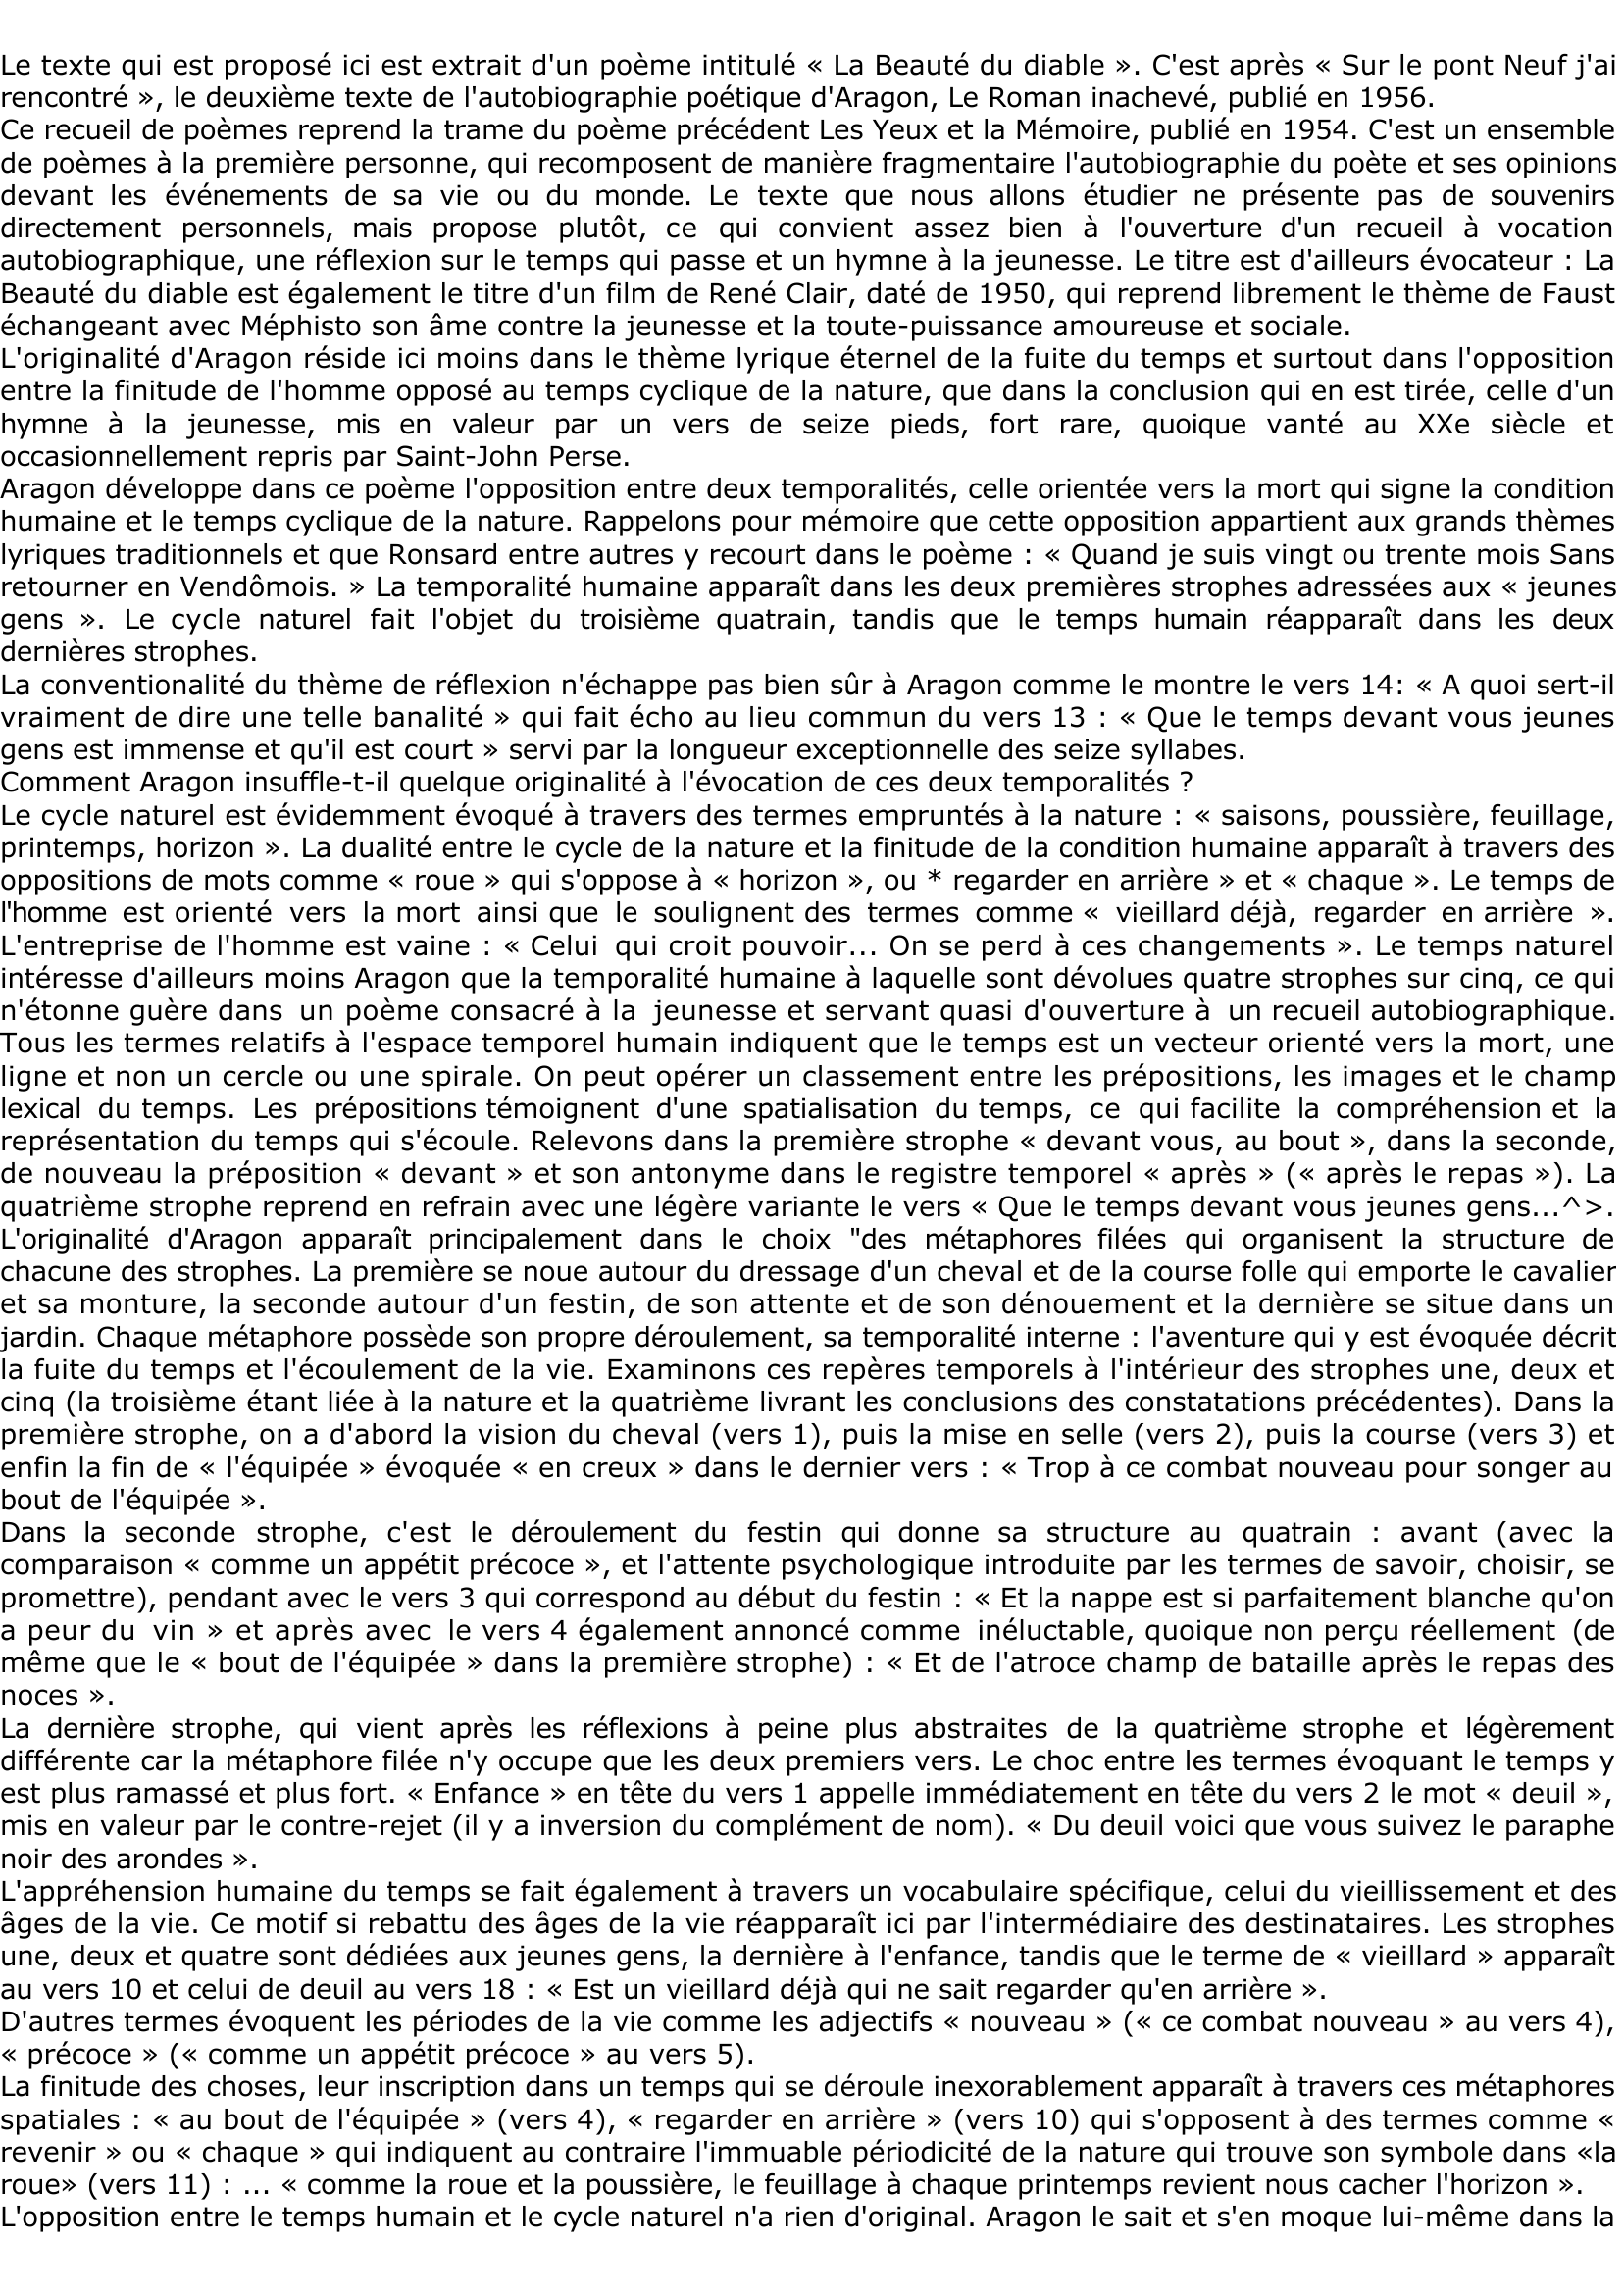 Prévisualisation du document Extrait de "La beauté du diable" - Louis Aragon in Le Roman Inachevé.